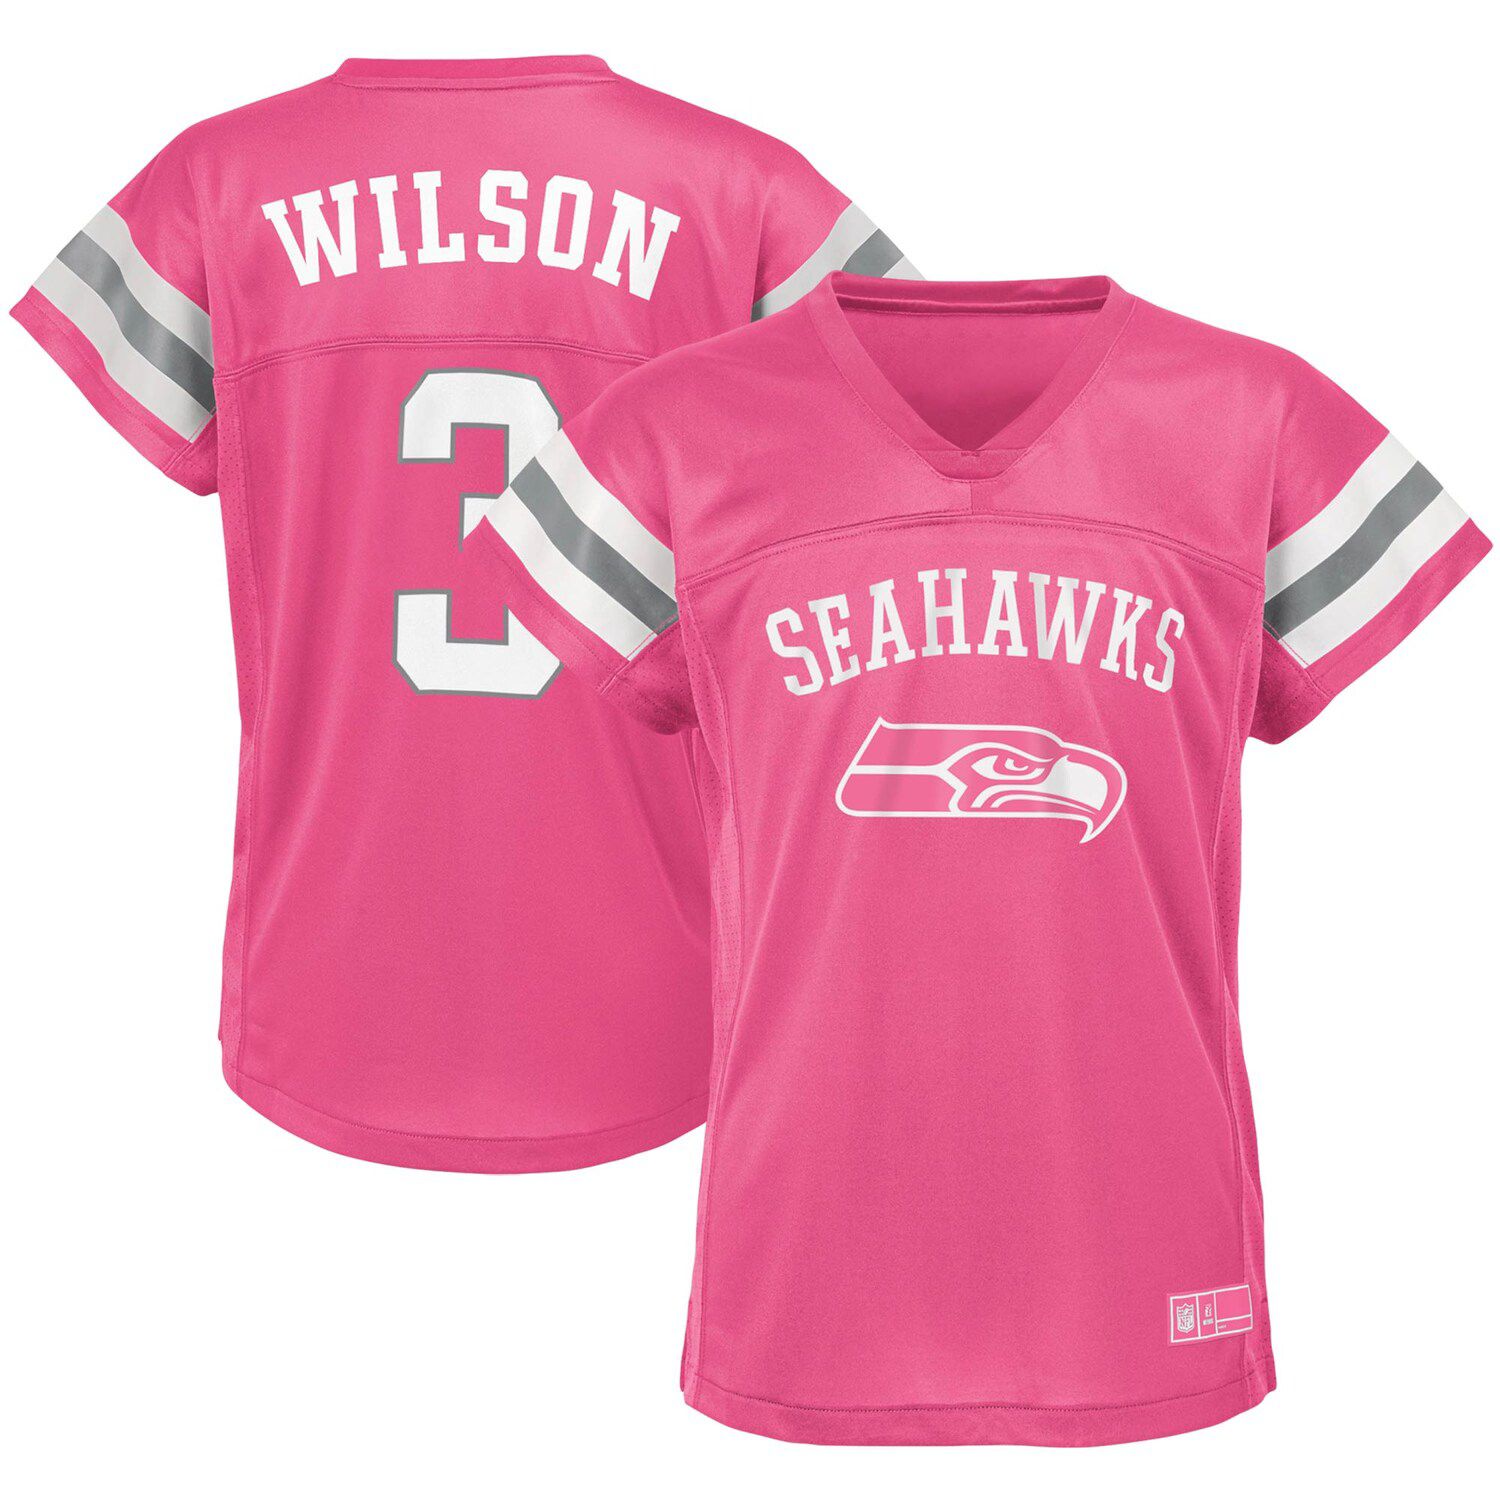 pink seattle seahawks jersey